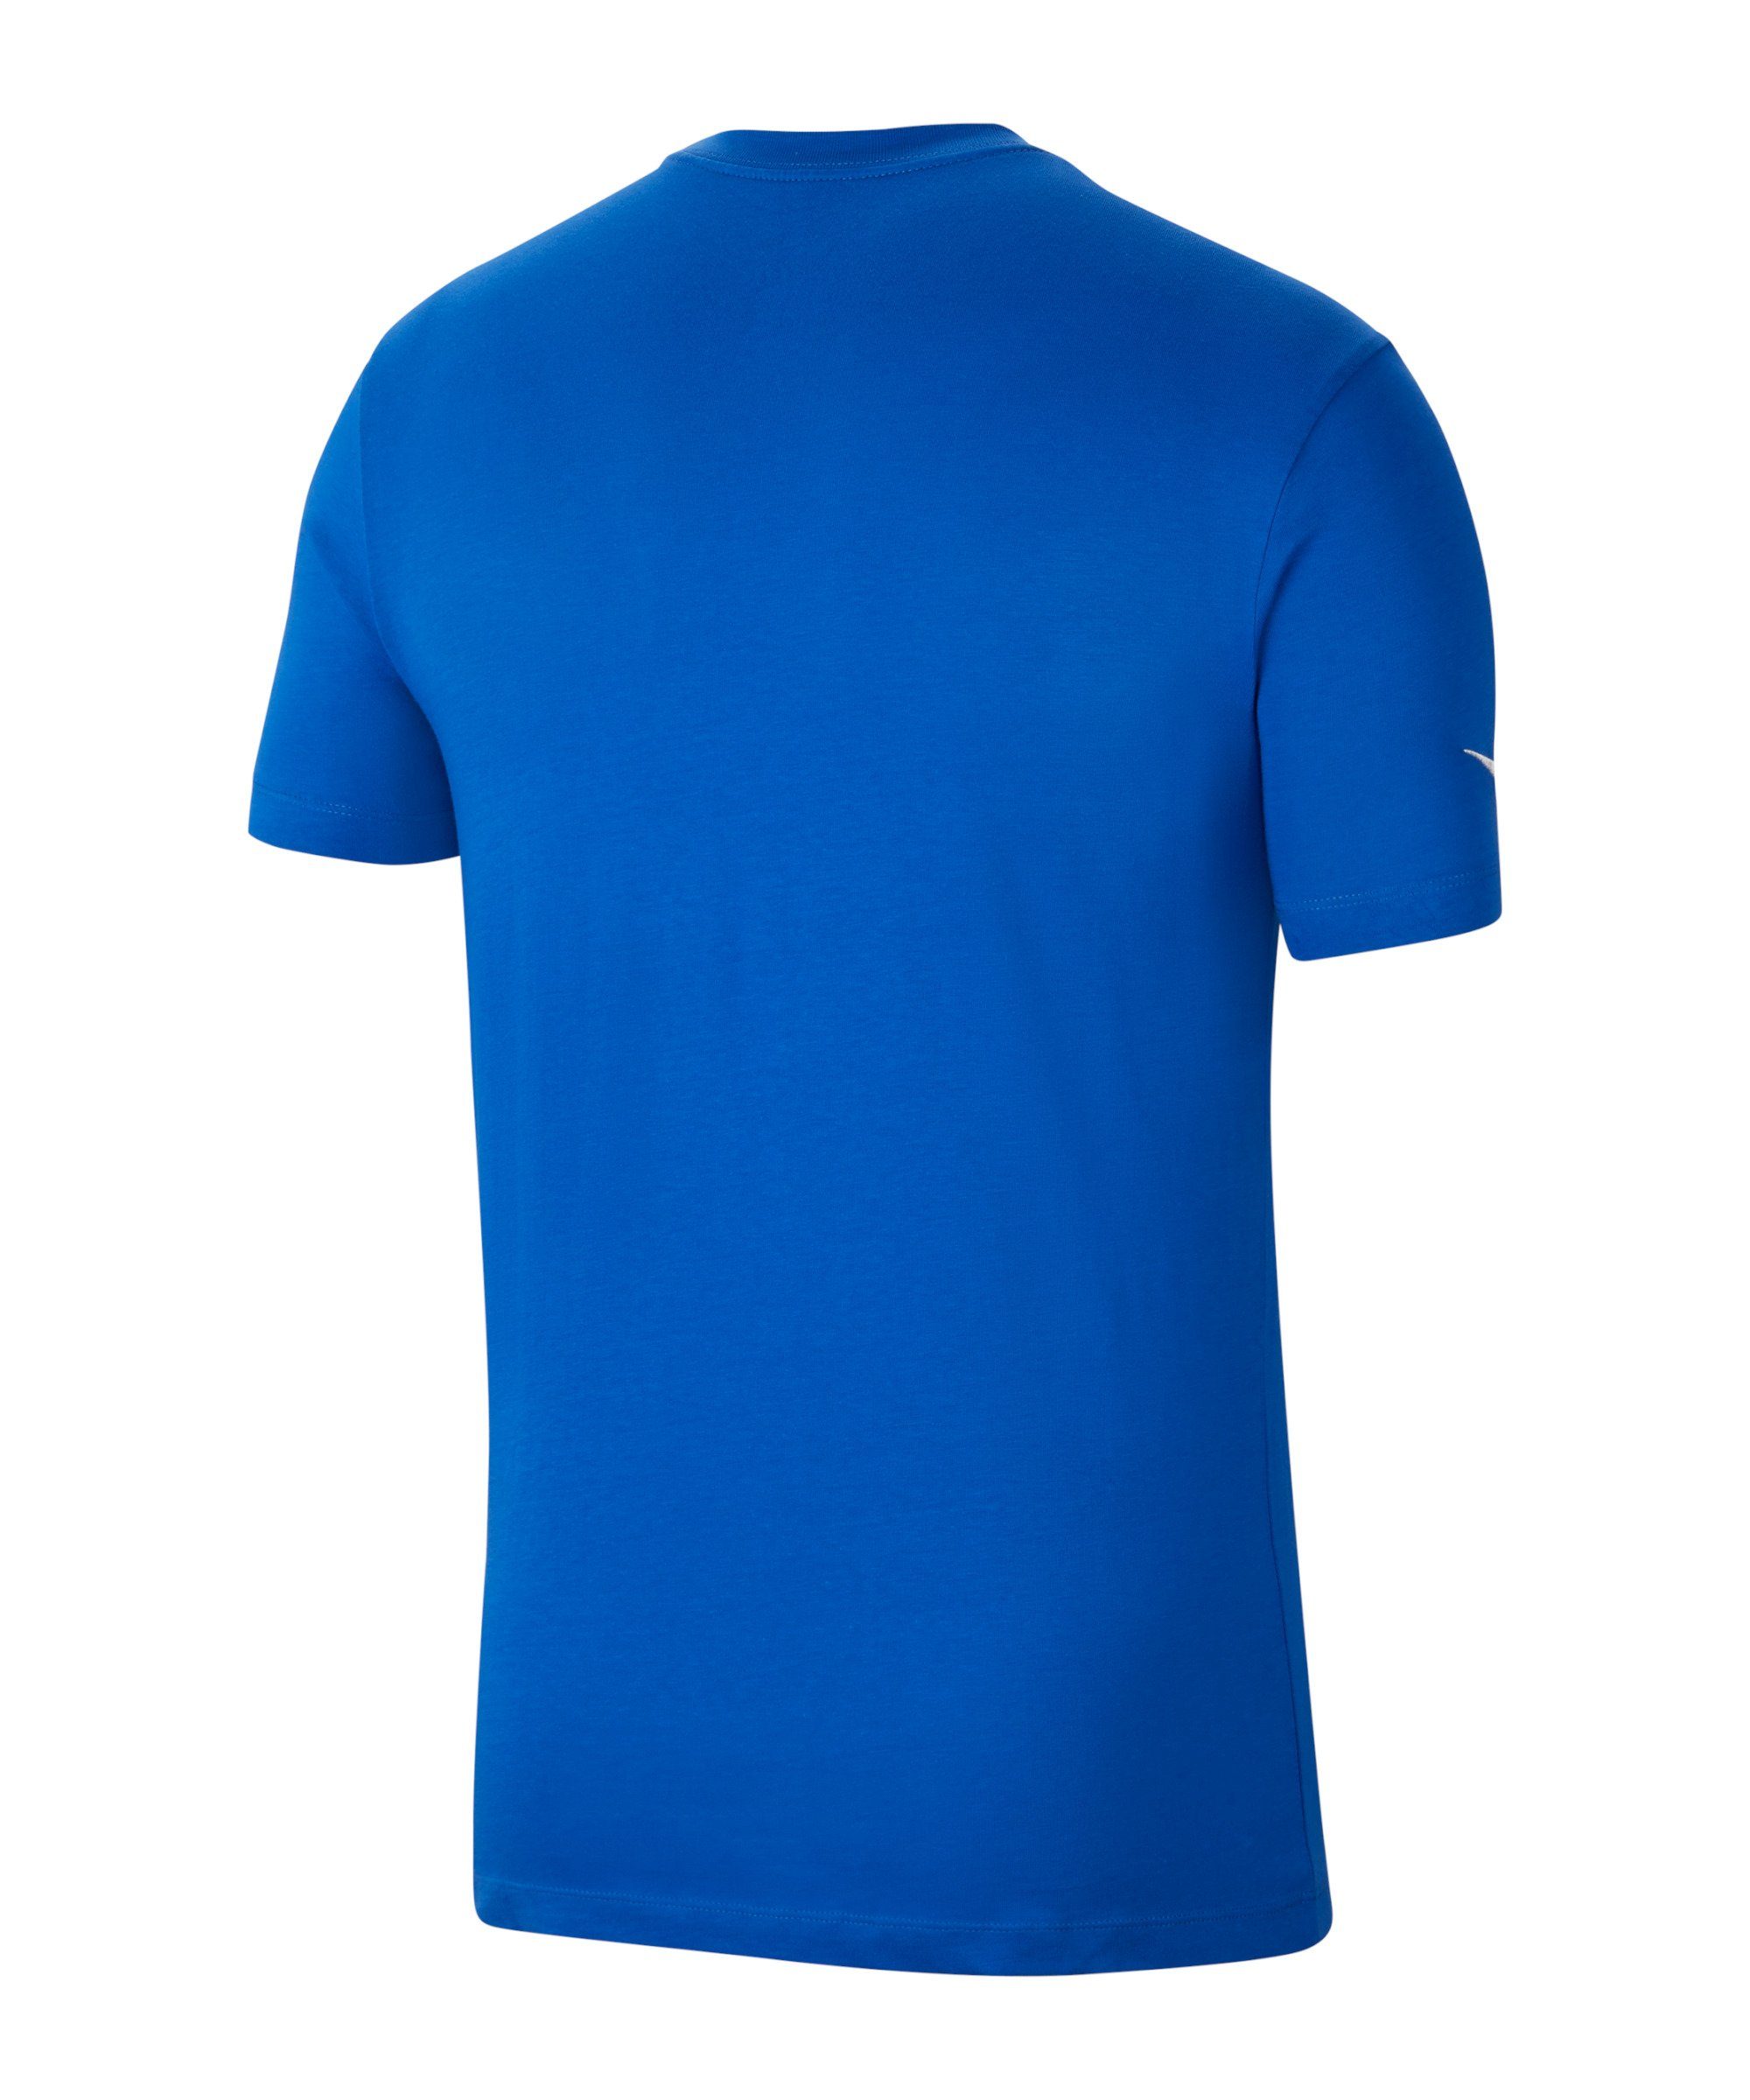 T-Shirt blau Nike T-Shirt 20 default Park